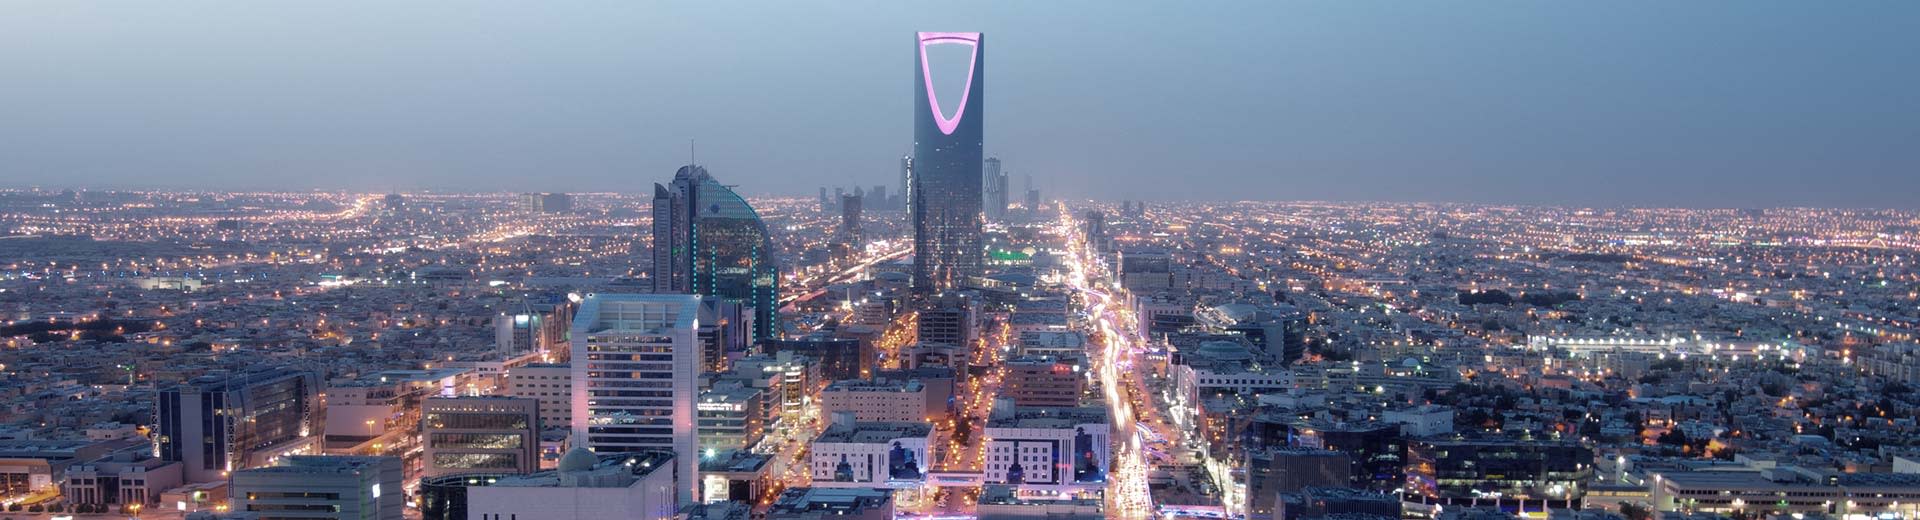 Das weitläufige Gittersystem von Riad dominiert die Aussicht, wobei der berühmte Flaschenöffner -Wolkenkratzer iconisch sitzt.